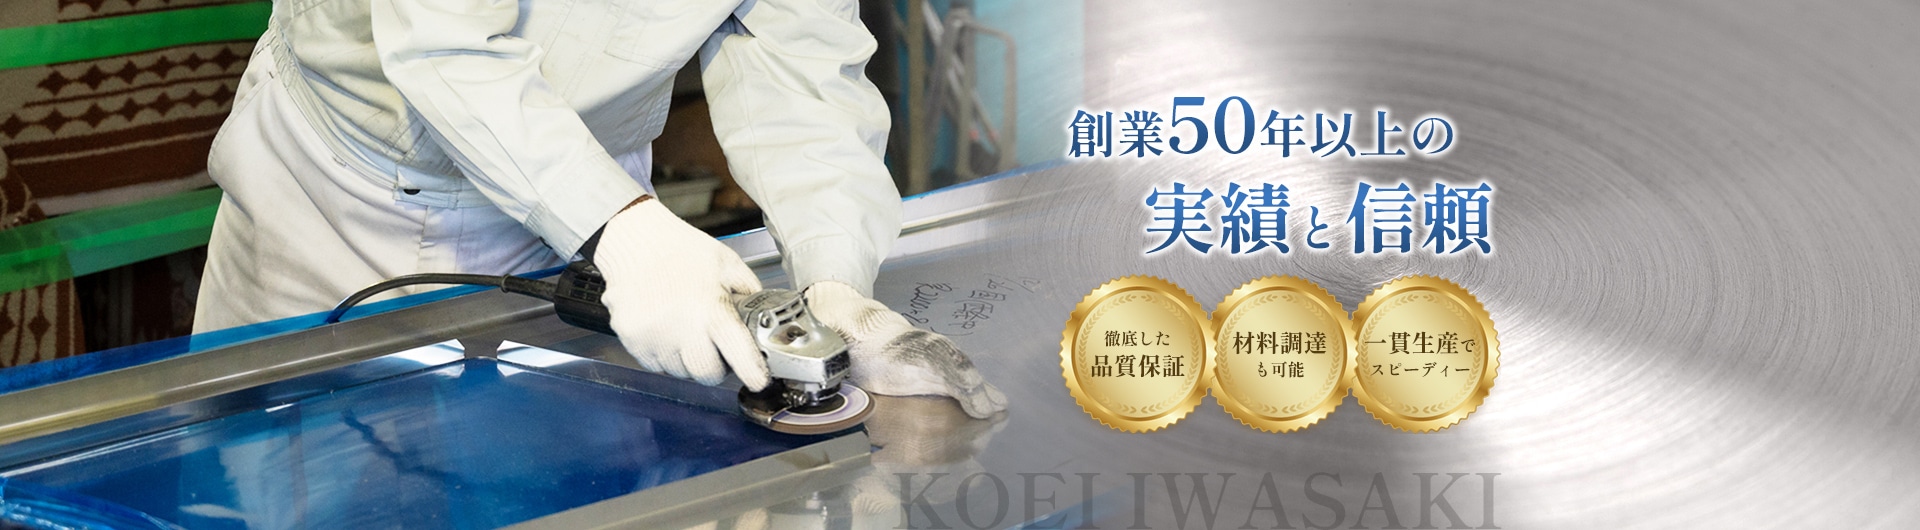 創業50年以上の実績と信頼 KOEI IWASAKI 徹底した品質保証・材料調達も可能・一貫生産でスピーディー